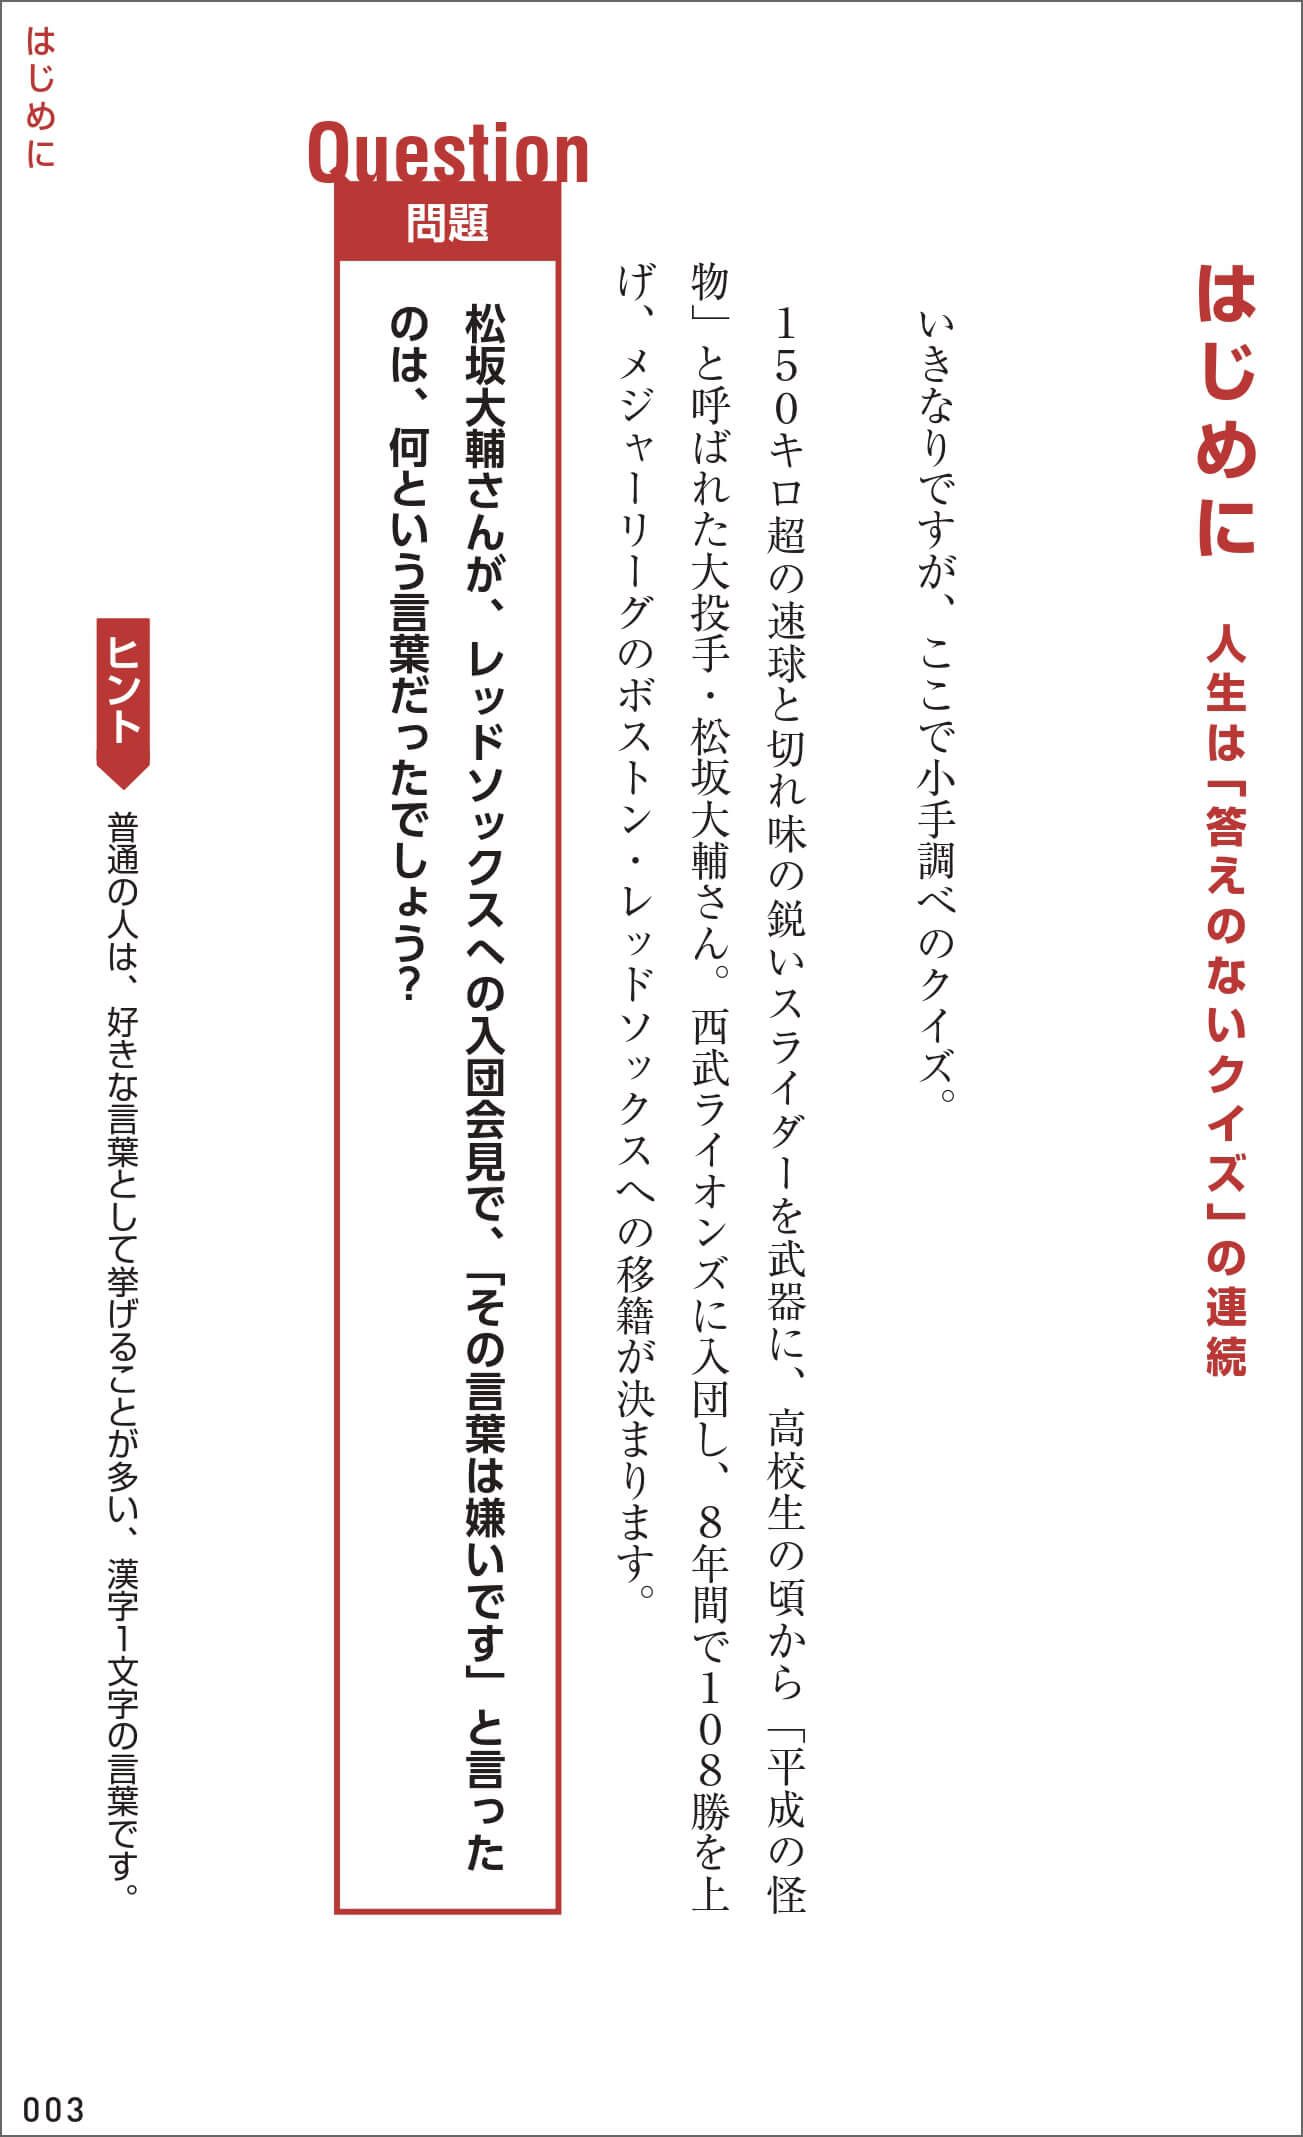 「松坂大輔さんが、レッドソックスへの入団会見で、「その言葉は嫌いです」と言ったのは、何という言葉だったでしょう？」紙面